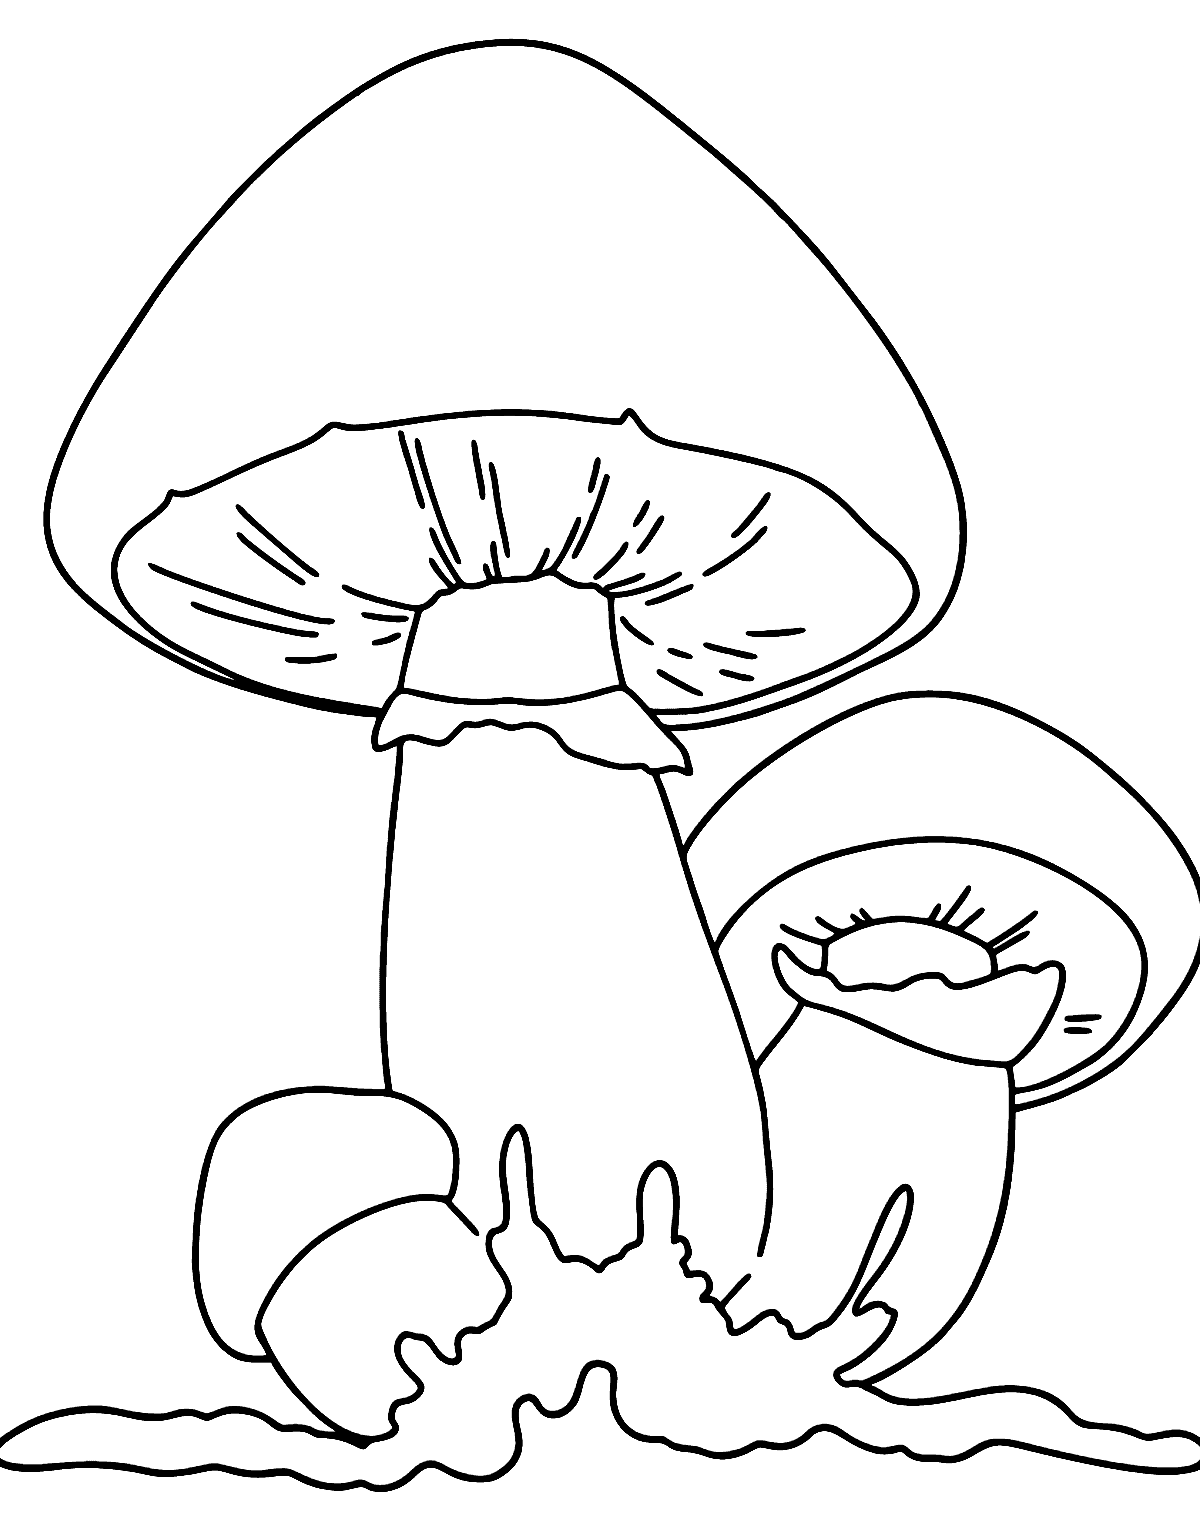 Três folhas de cogumelos de cogumelo